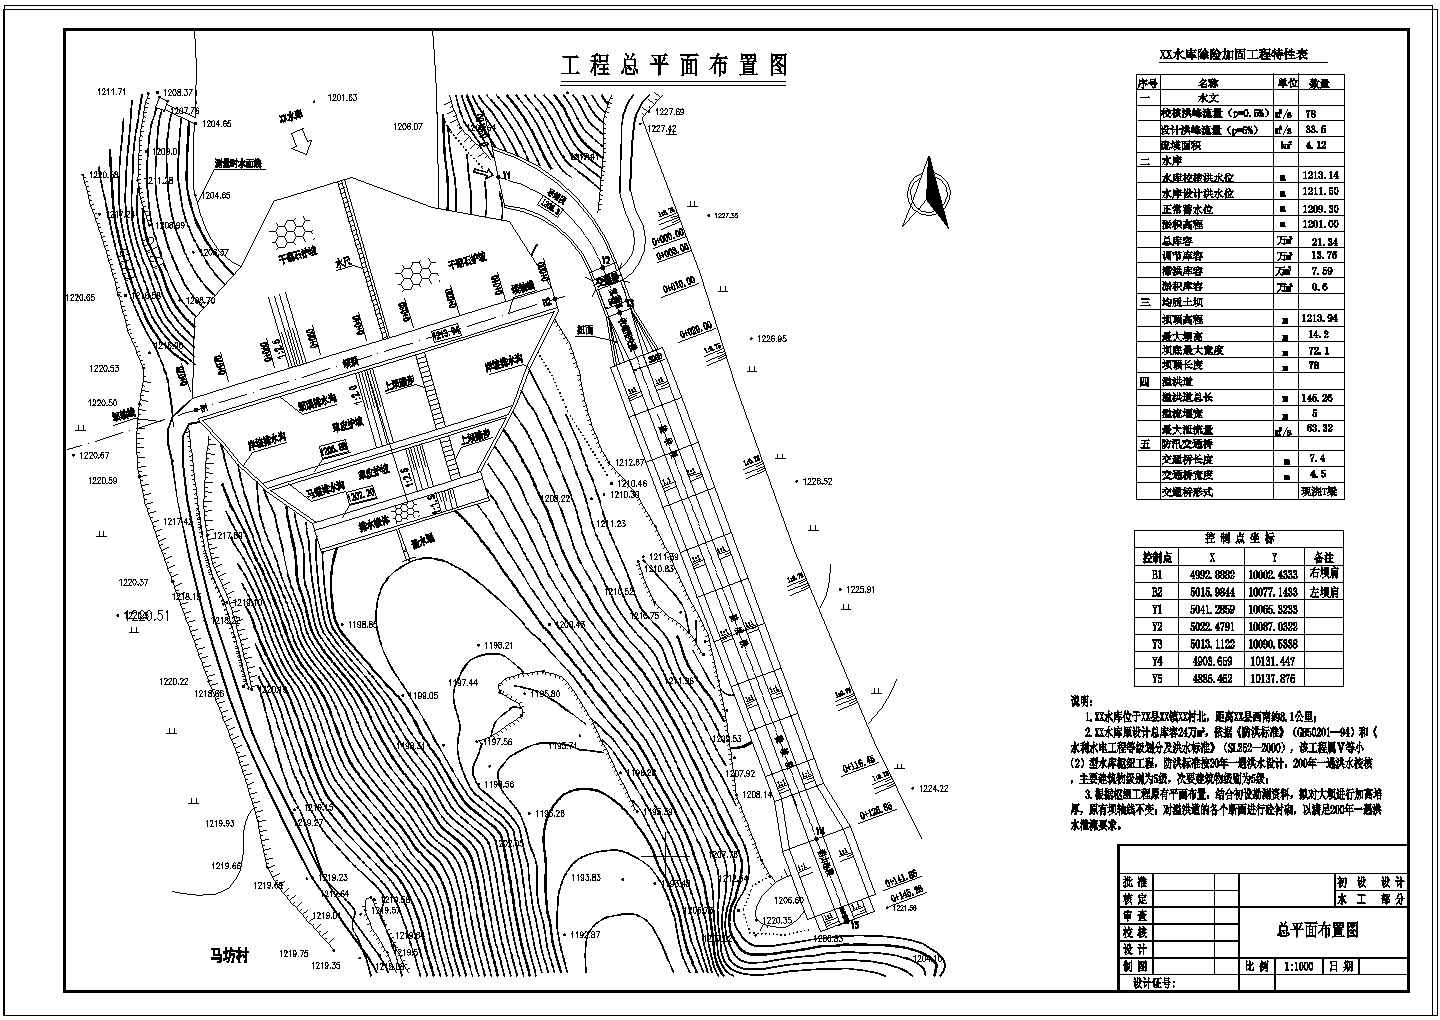 【陕西】小(二)型水库除险加固工程初步设计施工图